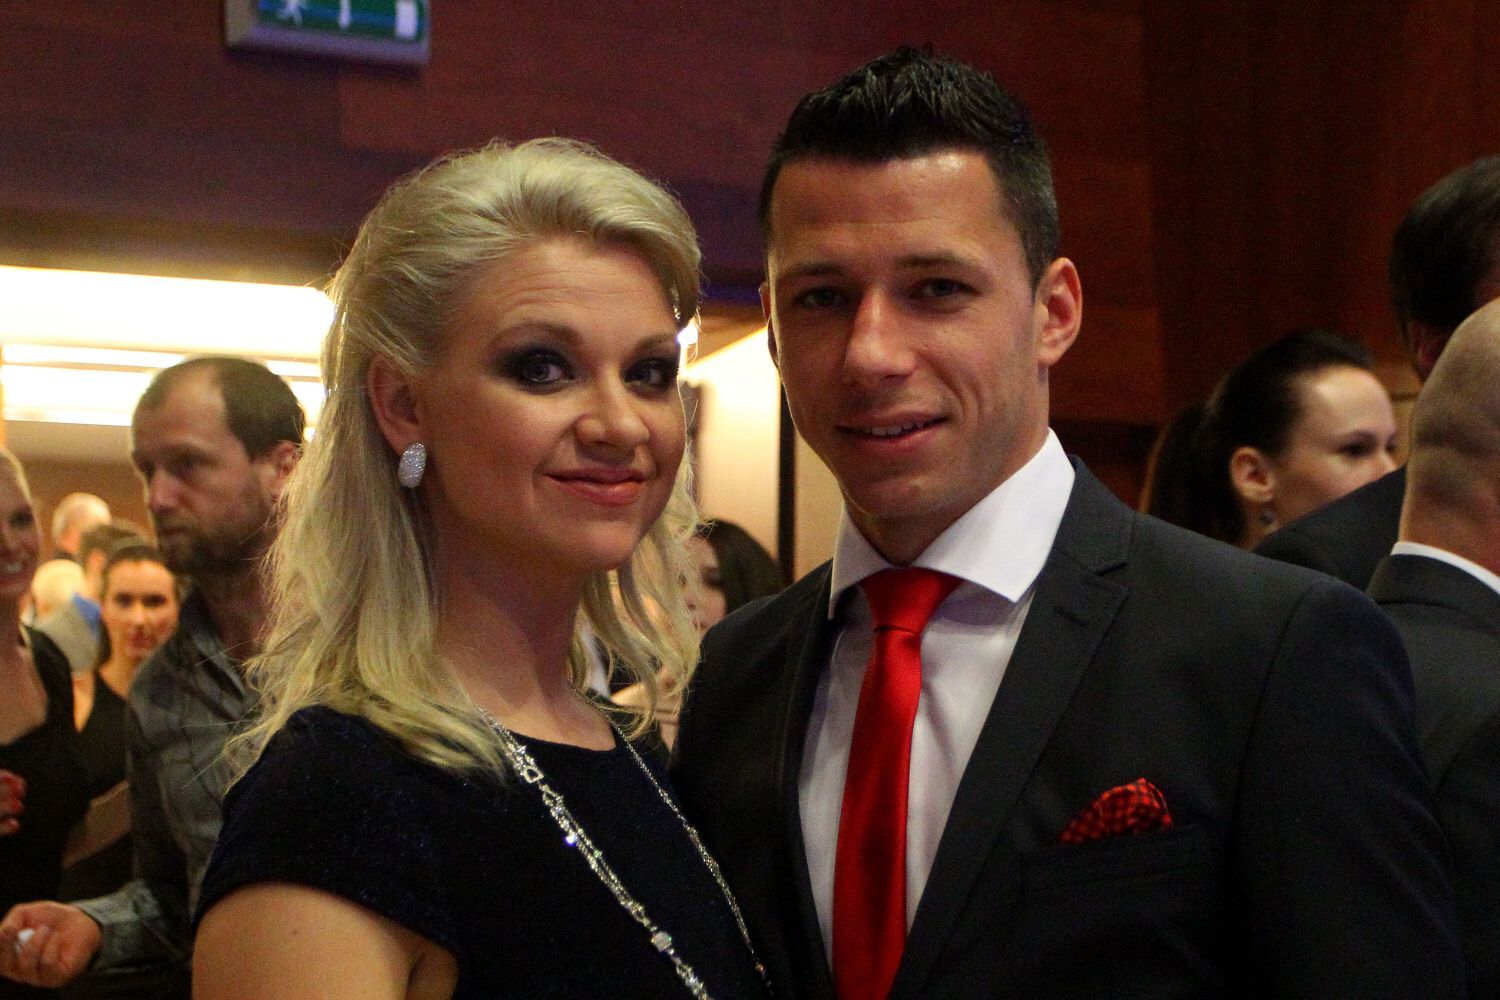 Fotbalista roku 2014: Marek Suchý s manželkou Alenou